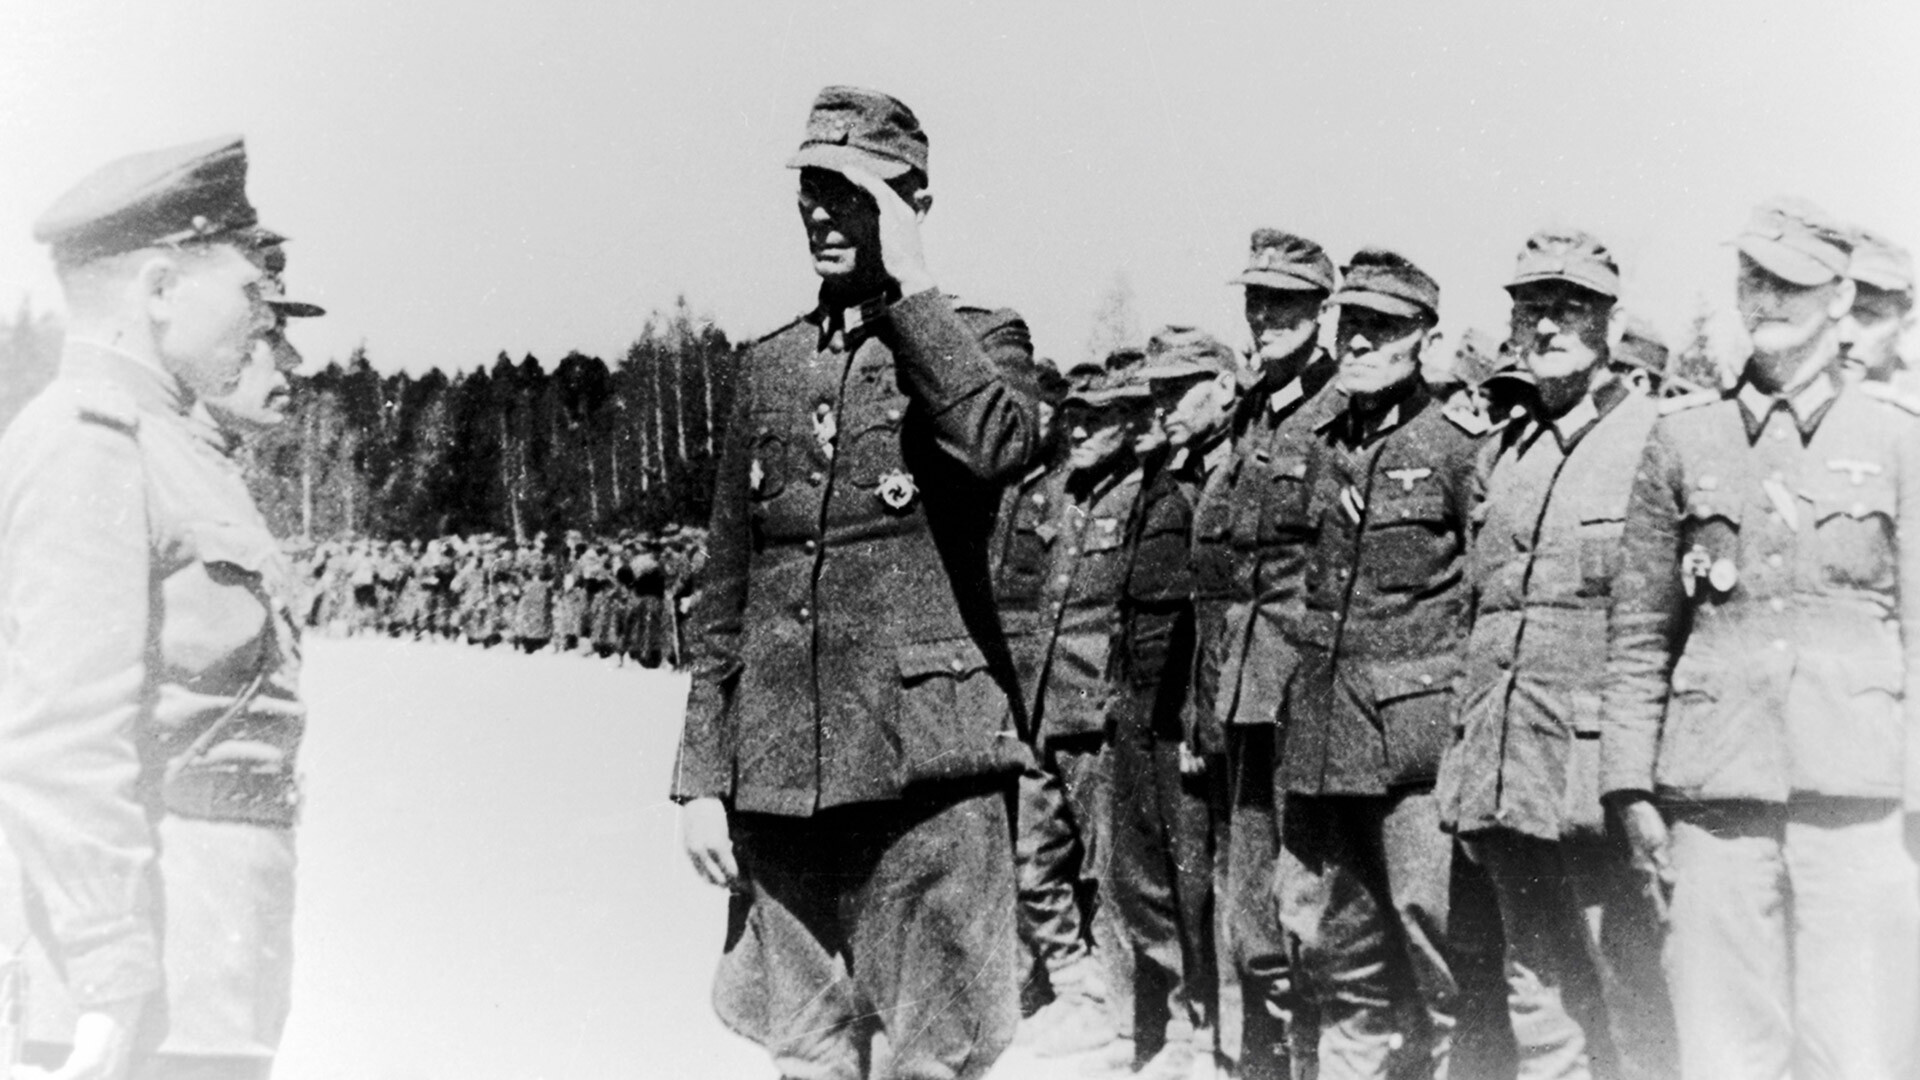 De acuerdo con los términos de la rendición, a partir de las 23 horas del 8 de mayo, los ejércitos fascistas alemanes bloqueados en la península de Curlandia cesaron su resistencia y comenzaron a rendirse